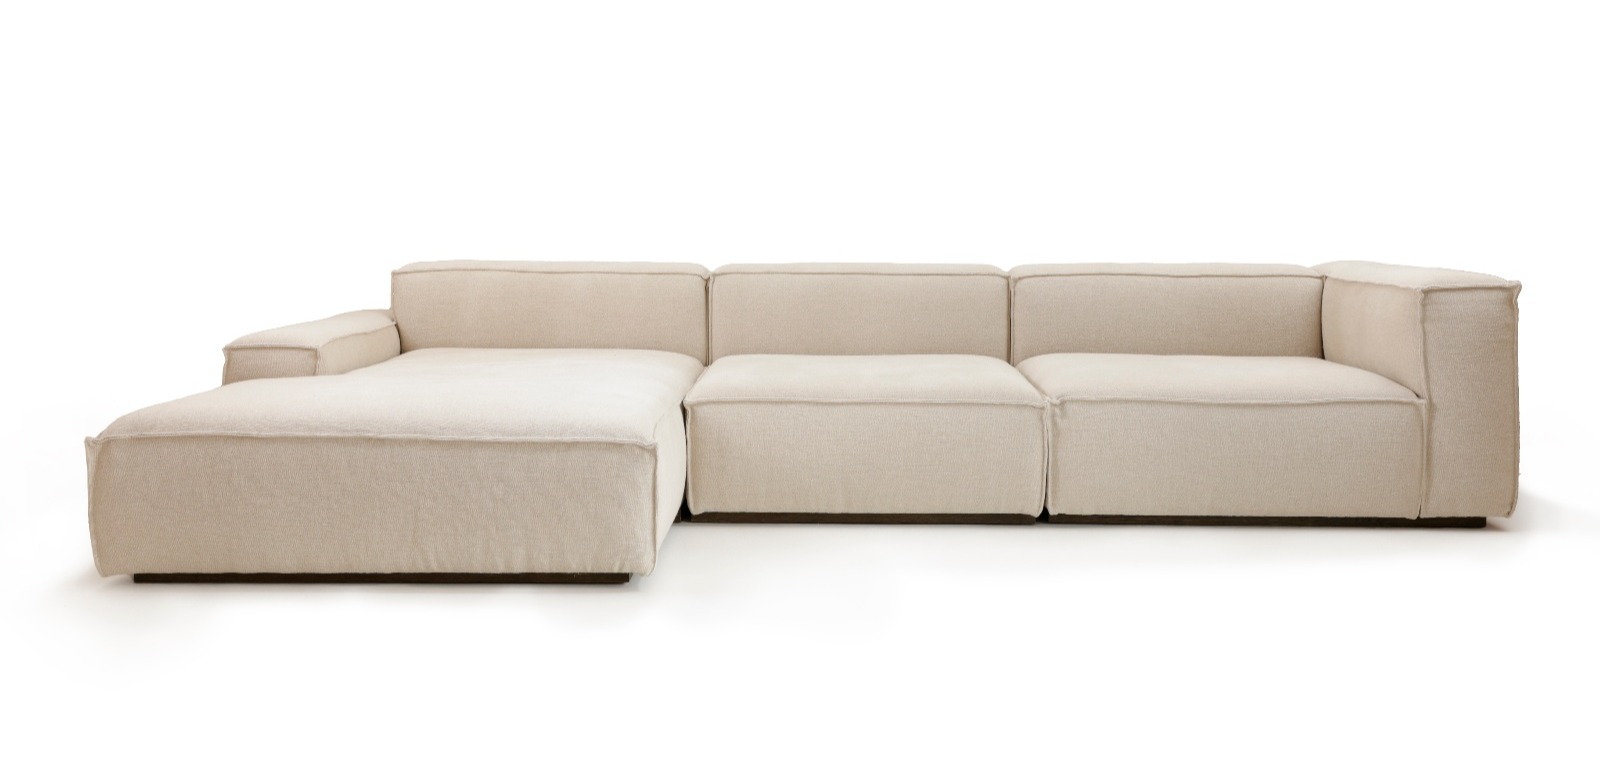 Collett & Victor_Dix sofa